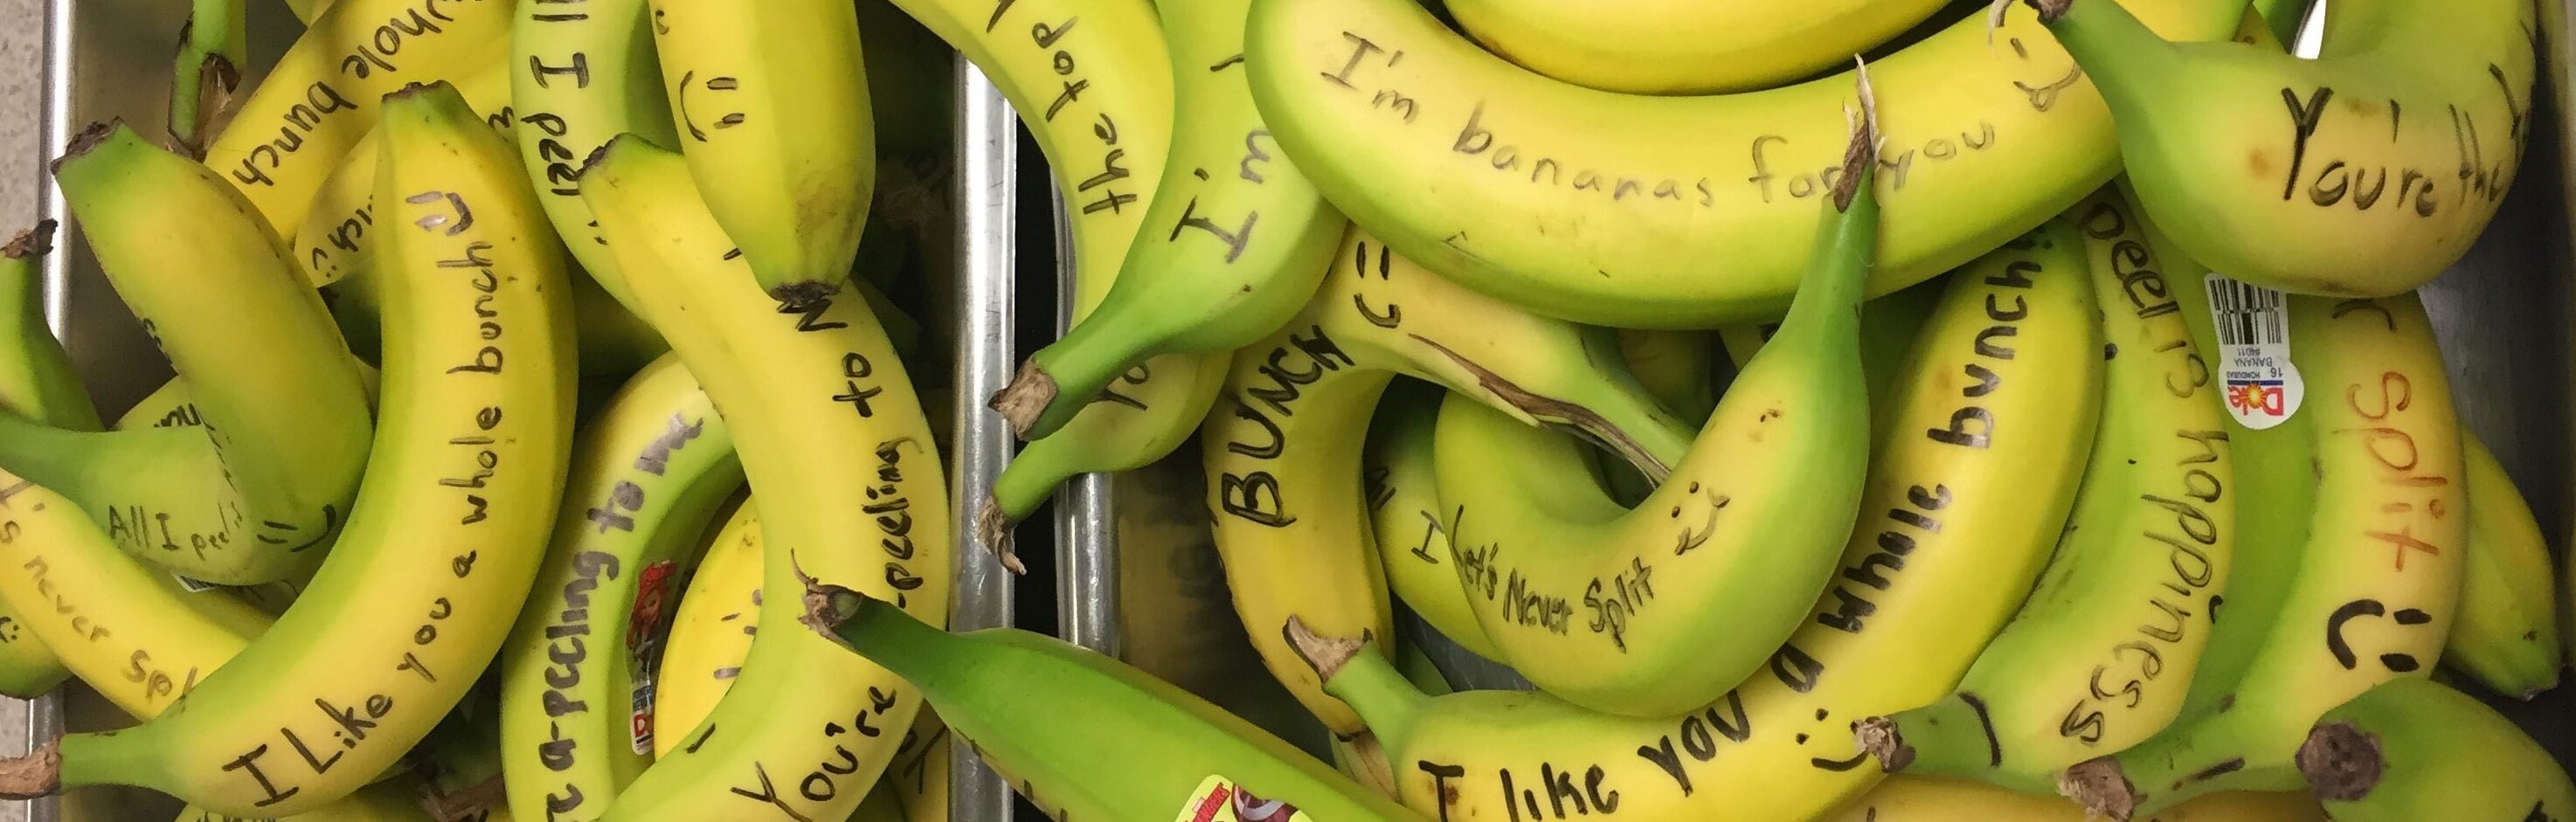 BYOB banana split